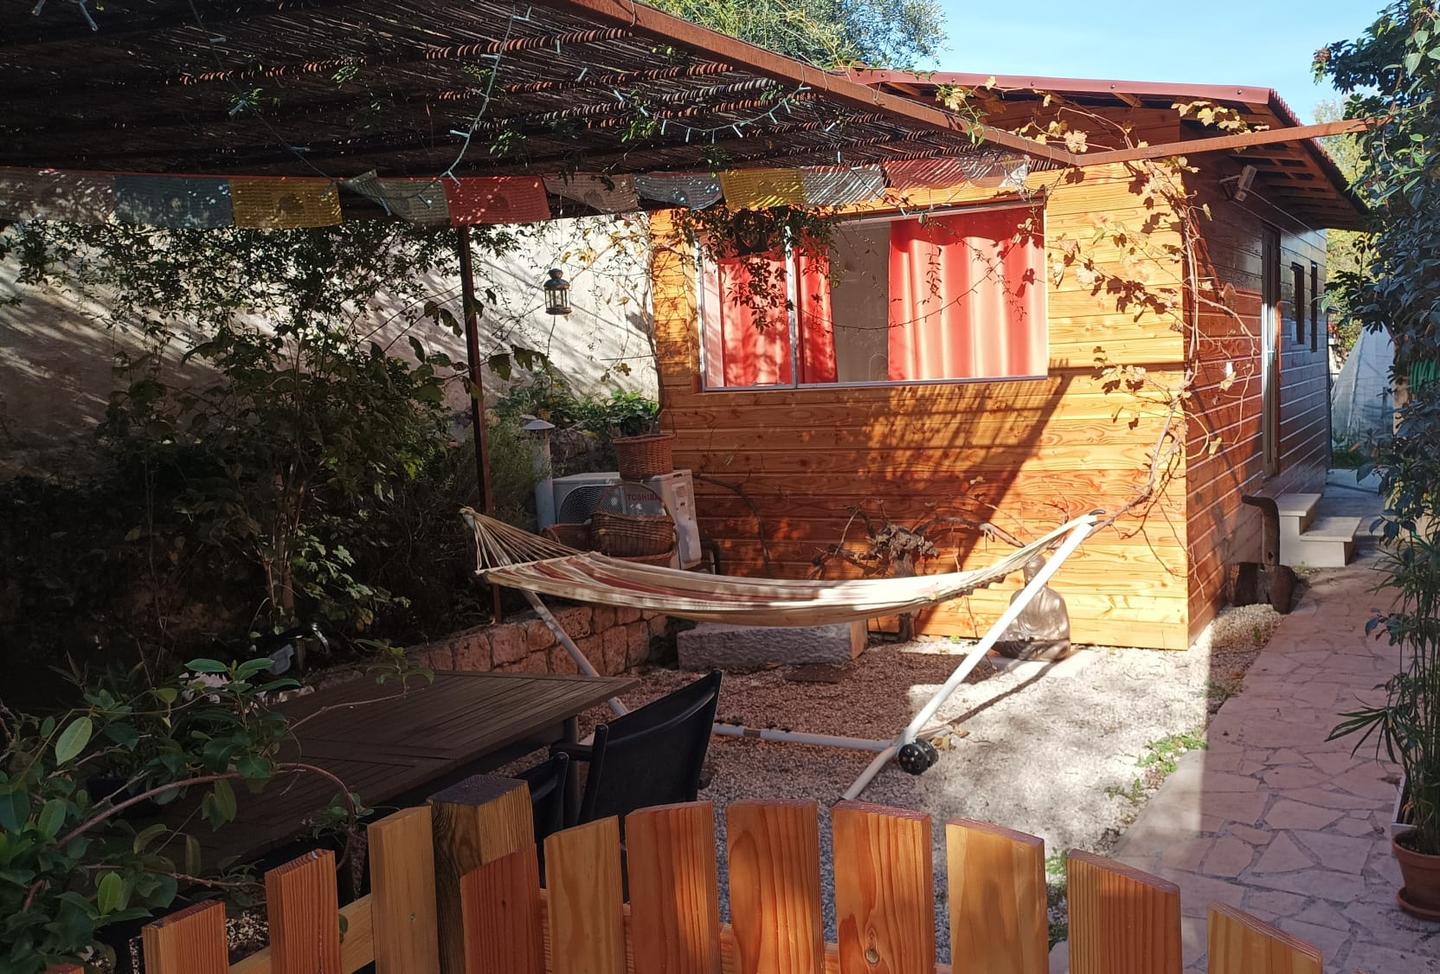 Hôte GreenGo: "La Casetta" Charmand bungalow tout confort - Image 14